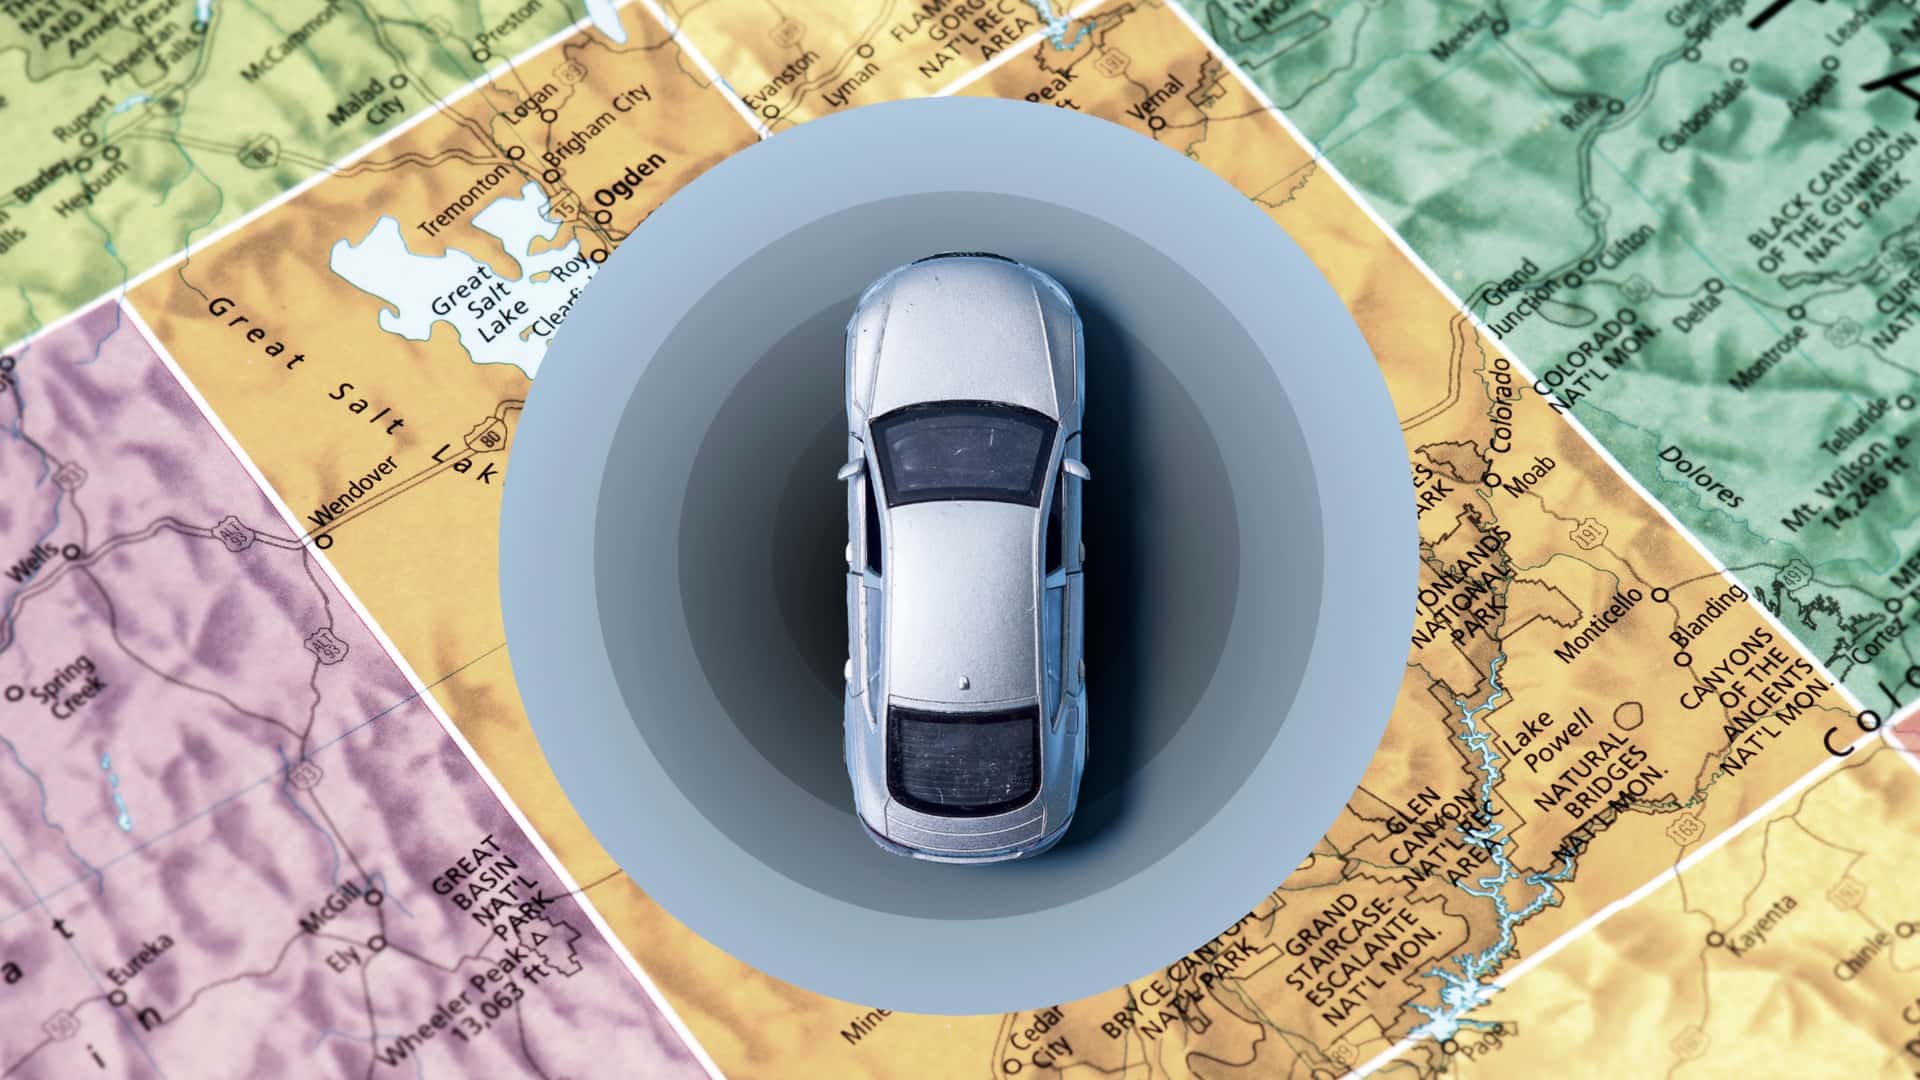 Utah পাইলট প্রোগ্রাম রাস্তা ব্যবহারের ট্যাক্স এবং টোলের জন্য গাড়ি ট্র্যাক করতে GPS ইনস্টল করে